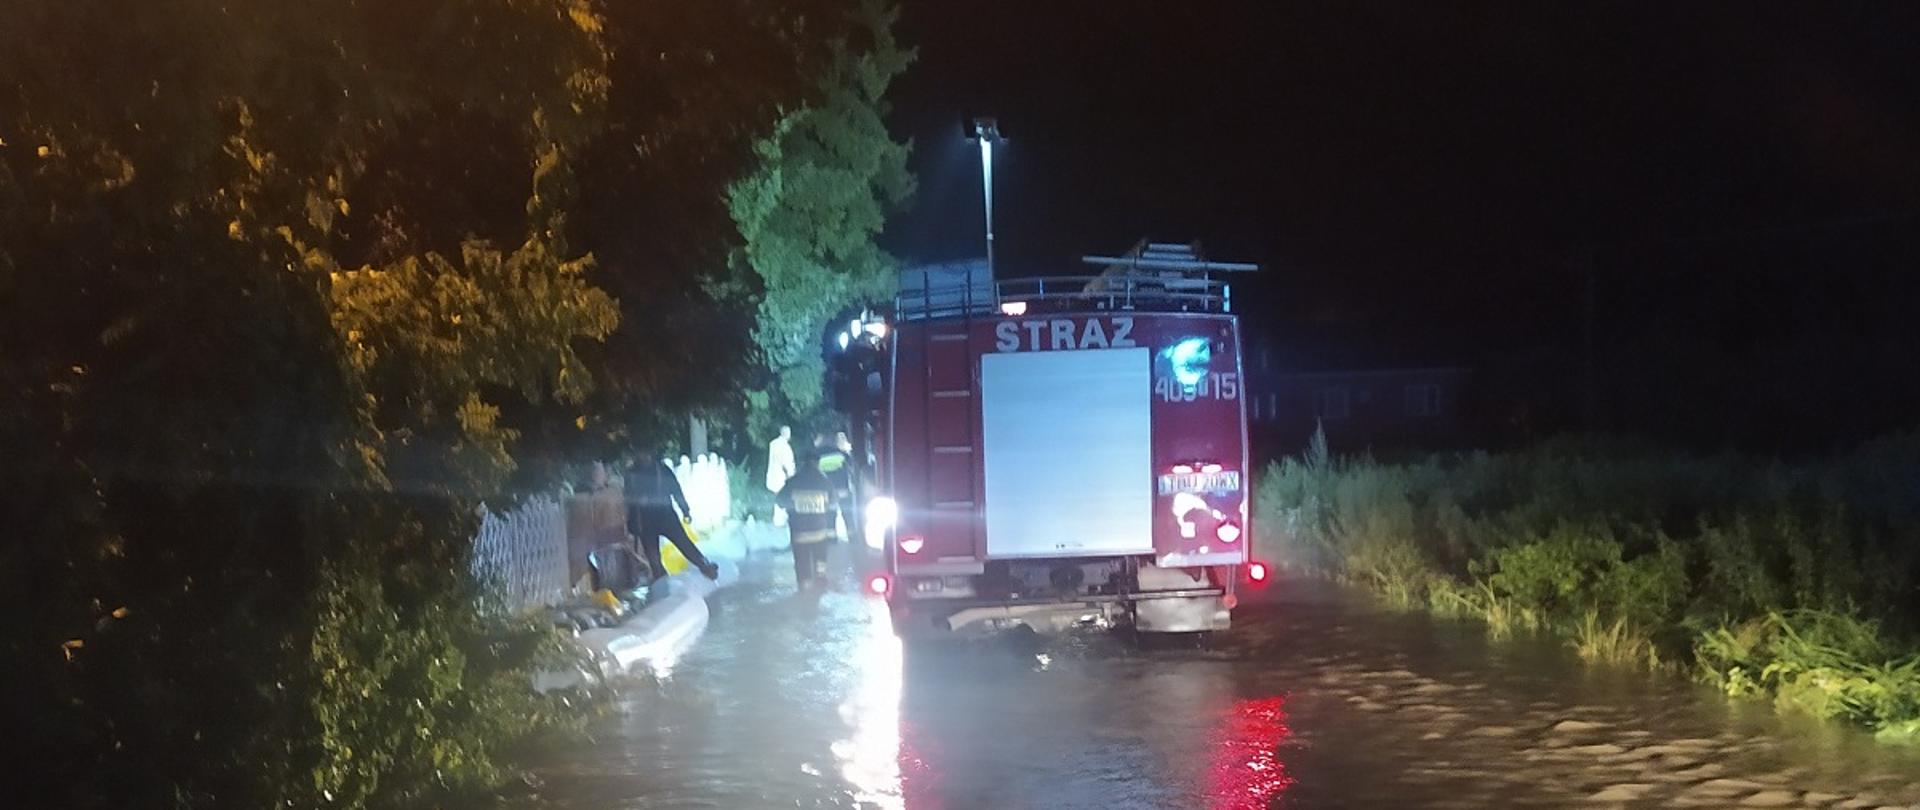 Zdjęcie przedstawia samochód pożarniczy stojący na częściowo zalanej drodze, który oświetla teren działania